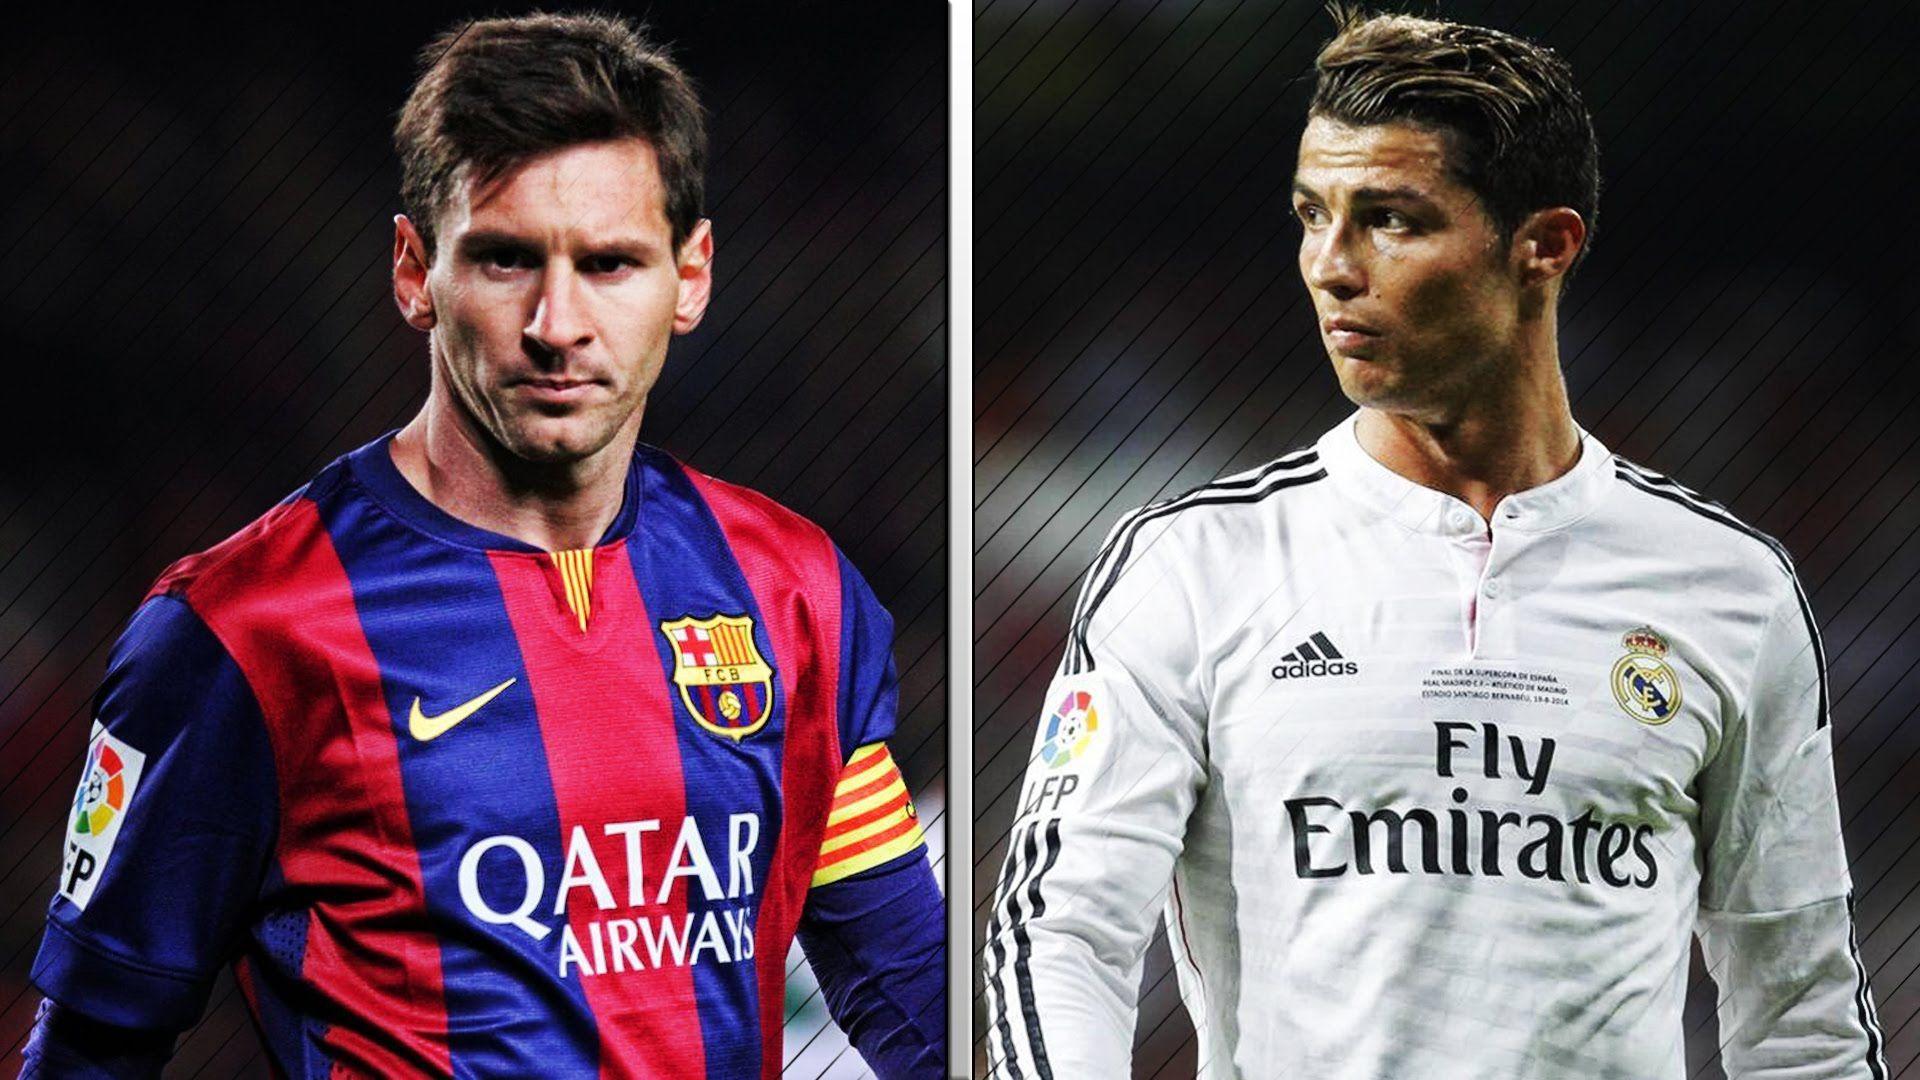 Messi Vs Ronaldo Wallpapers: Tận hưởng sự cạnh tranh giữa hai siêu sao bóng đá hàng đầu thế giới bằng cách xem những hình nền độc đáo về Messi và Ronaldo.